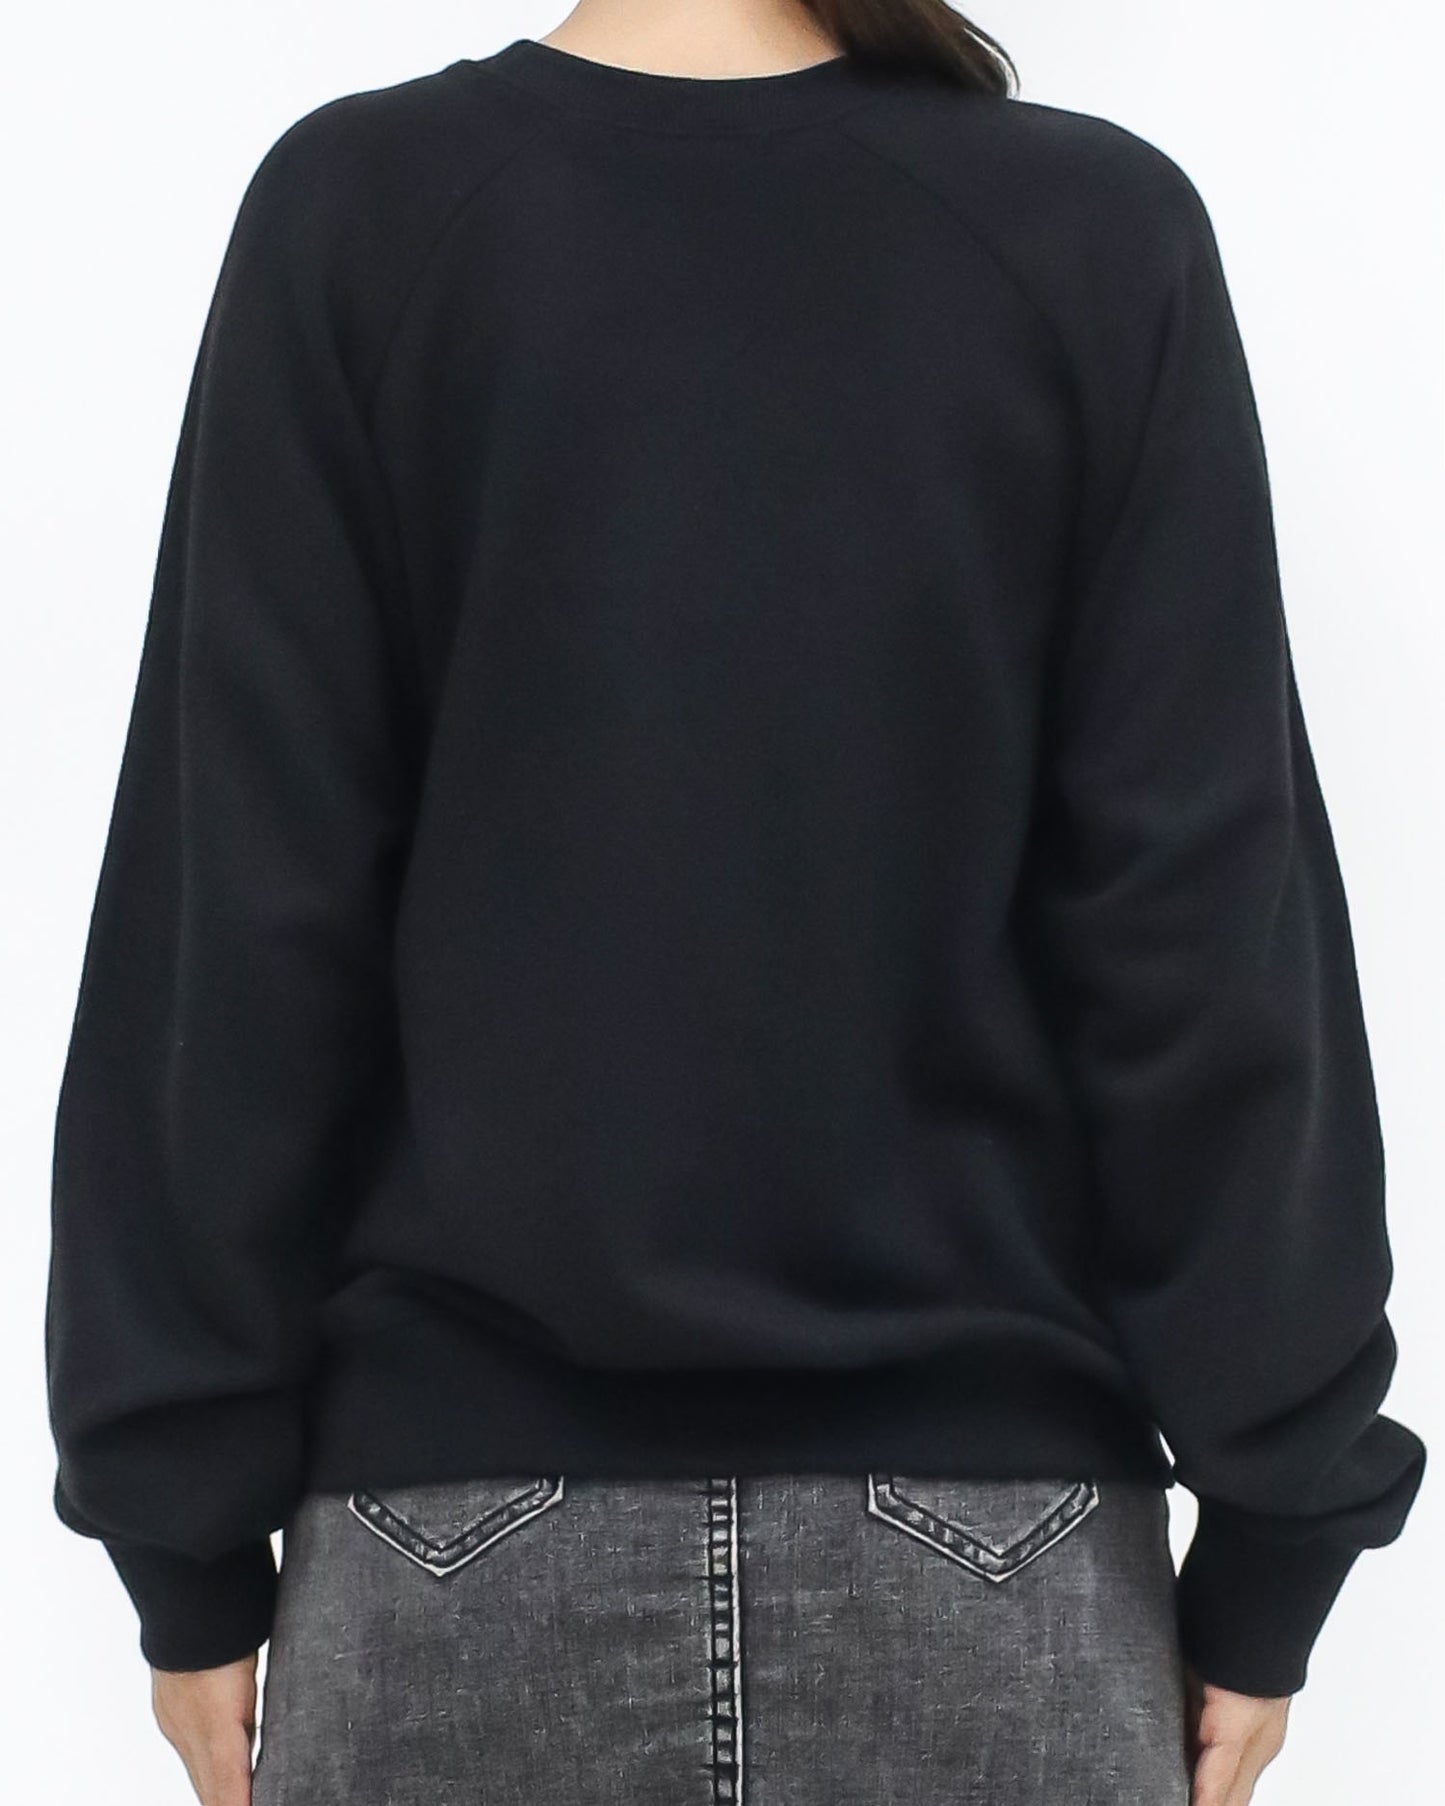 black & ivory bow printed sweatshirt *pre-order*